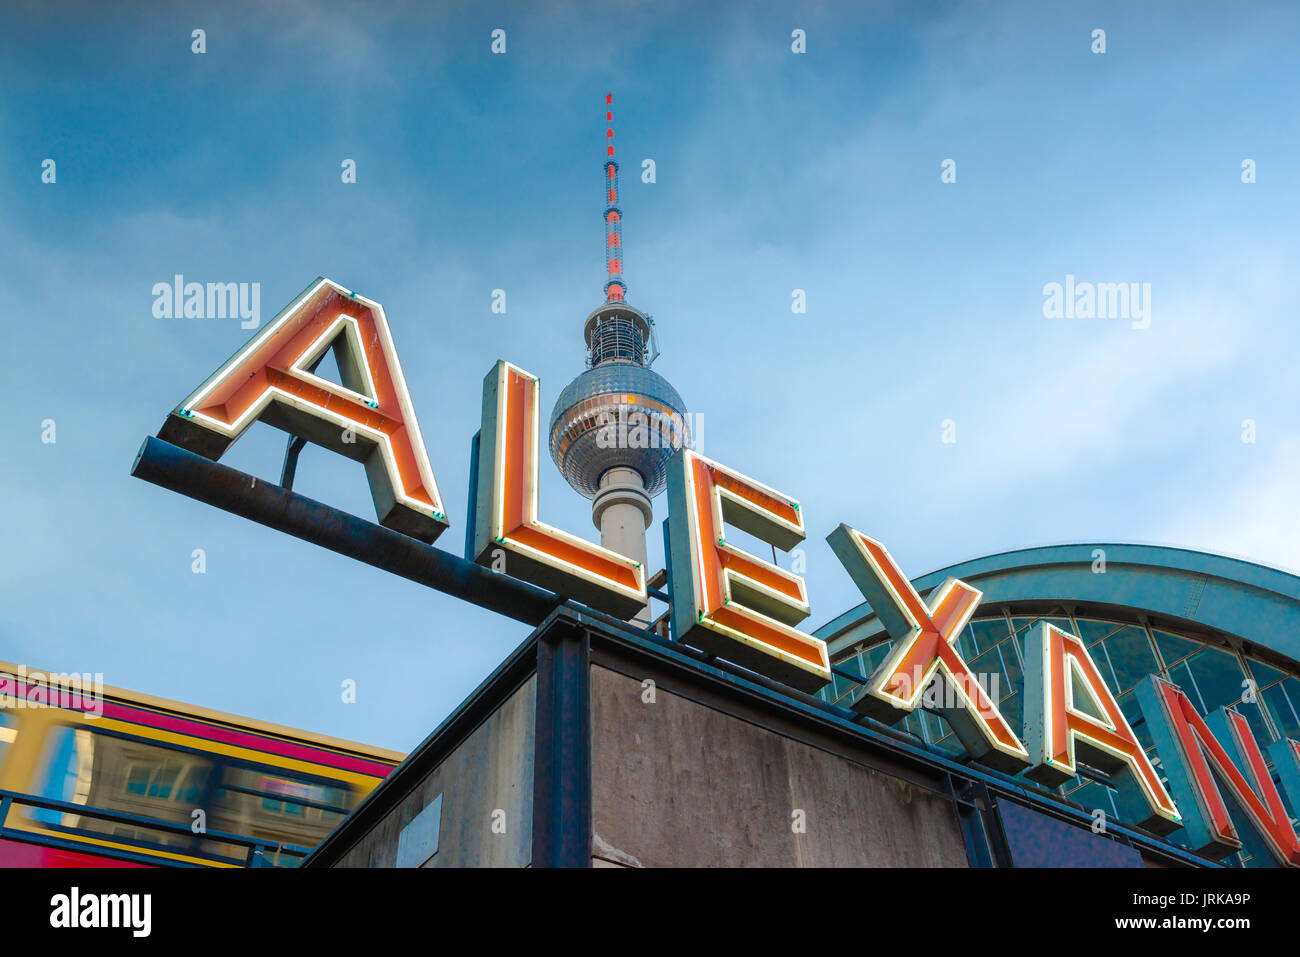 Berlin Alexanderplatz, Blick auf das berühmte rote Neonschild am Alexanderplatz Bahnhof im Zentrum von Berlin, Deutschland. Stockfoto